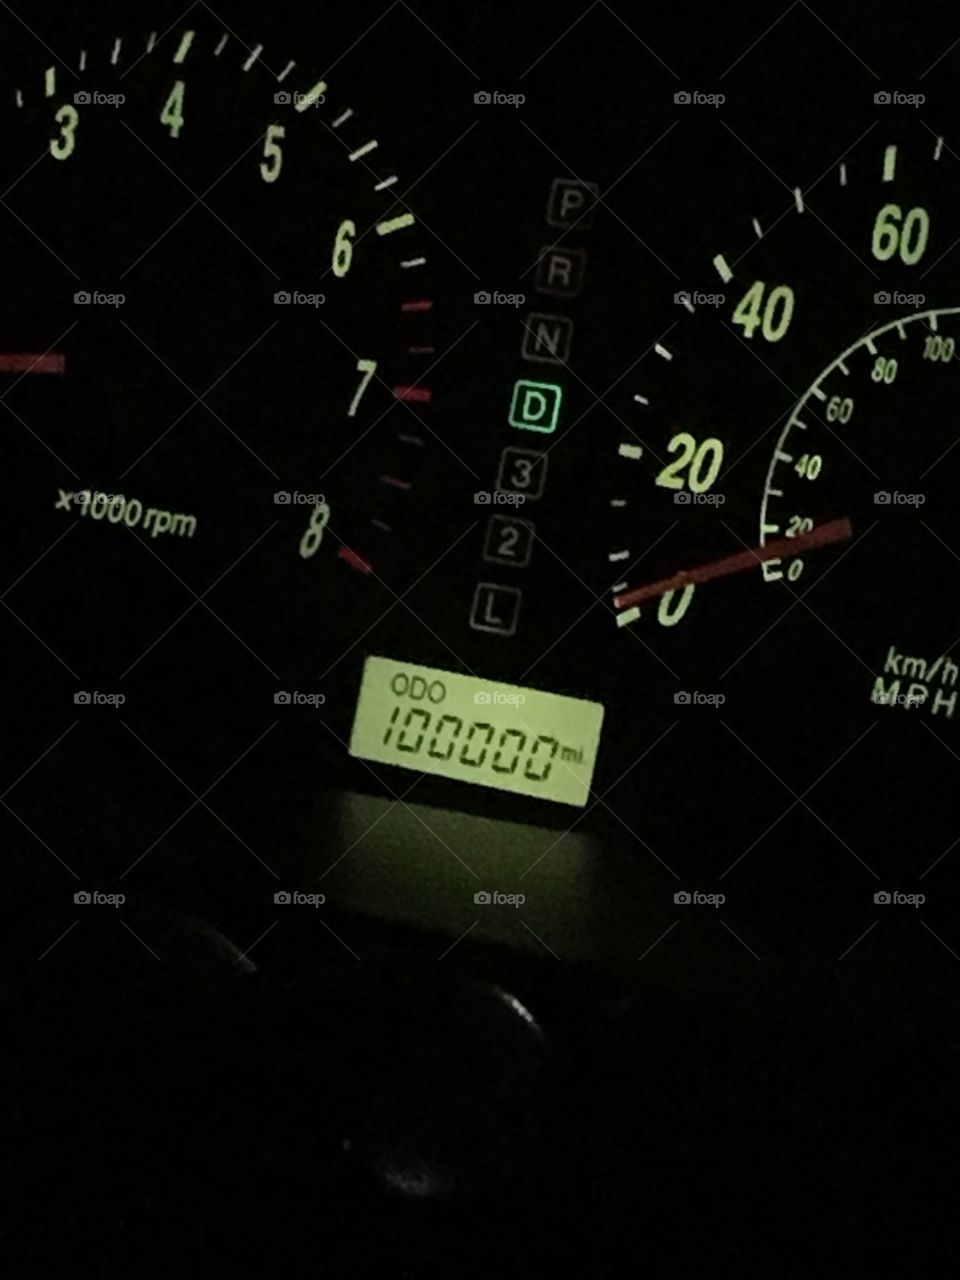 100,000 miles!